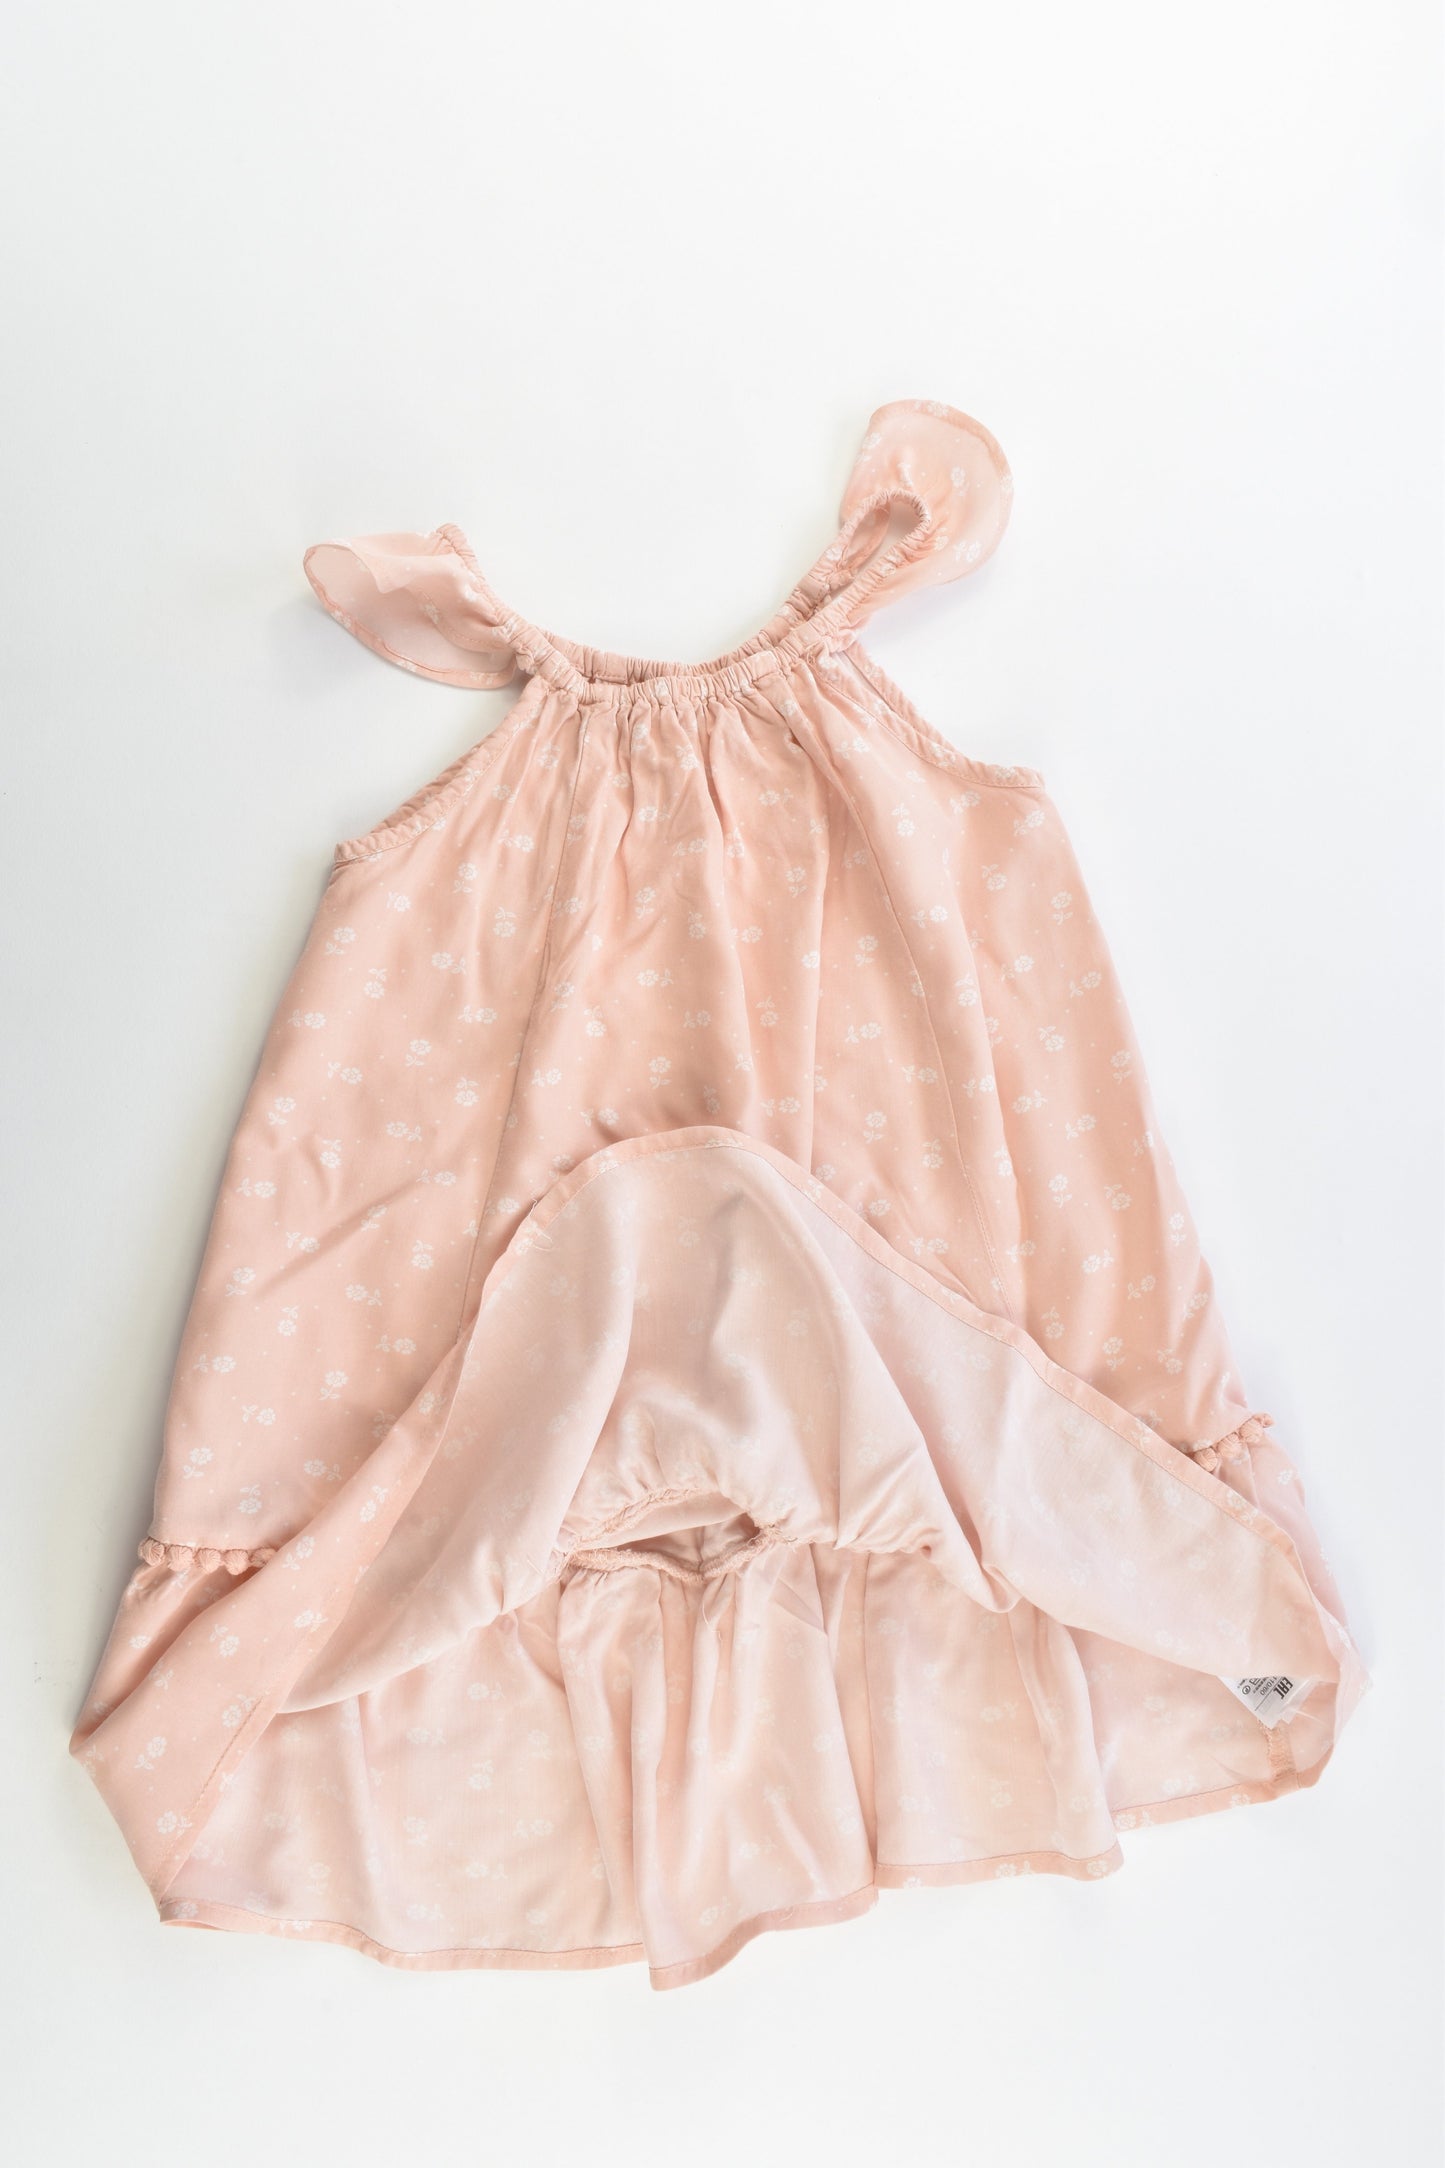 Gap Kids Size 4-5 (110 cm) Lightweight Dress